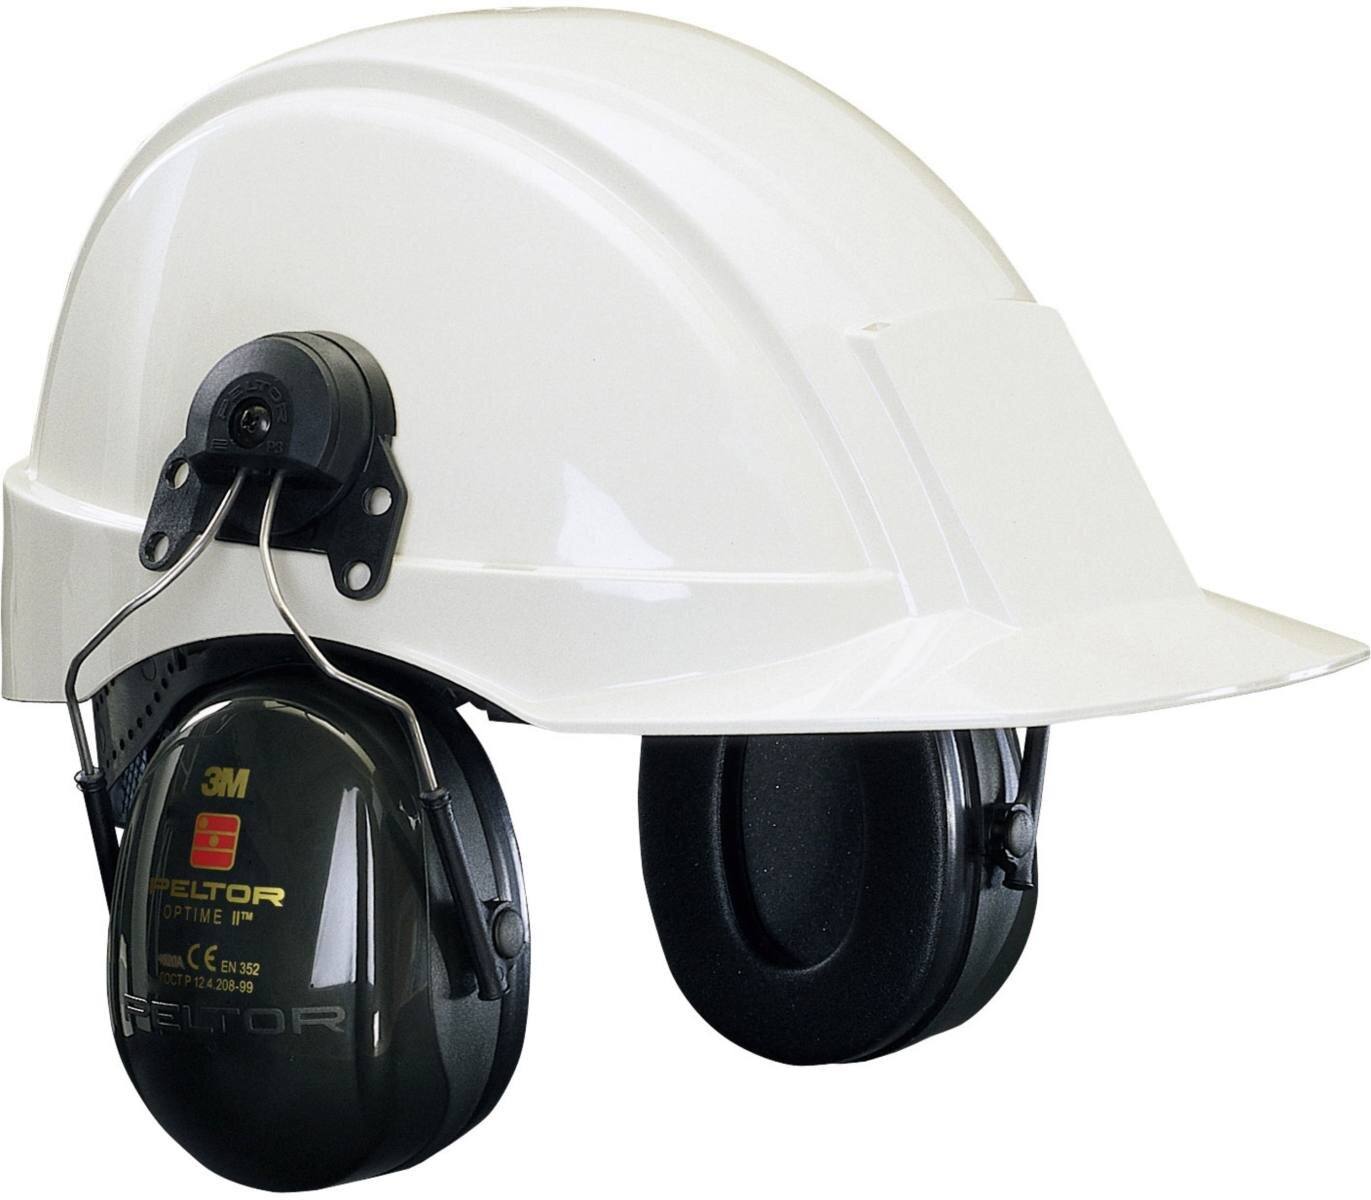 3M Peltor Optime II Kapselgehörschutz, Helmbefestigung, grün, mit Helmadapter P3E (für alle 3M Helme, ausgenommen G2000), SNR = 30 dB, H520P3E